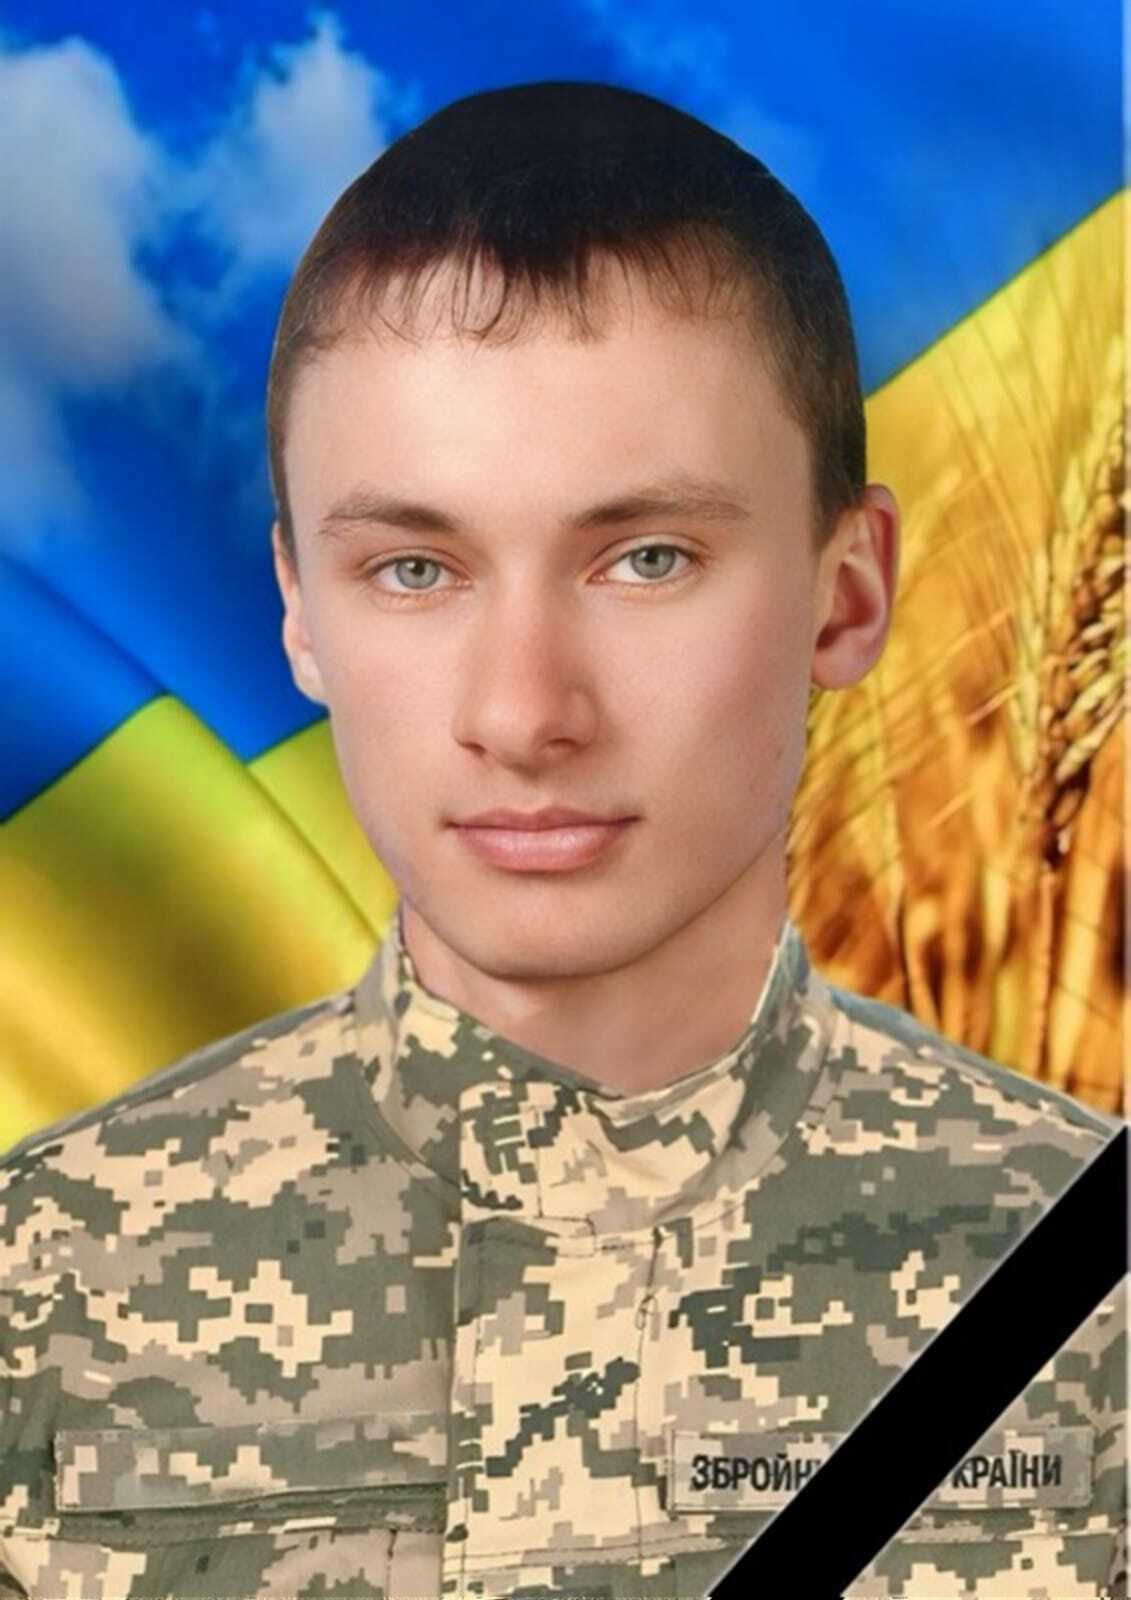 "Единственный сын в семье": в боях за Украину погиб защитник из Хмельницкой области. Фото